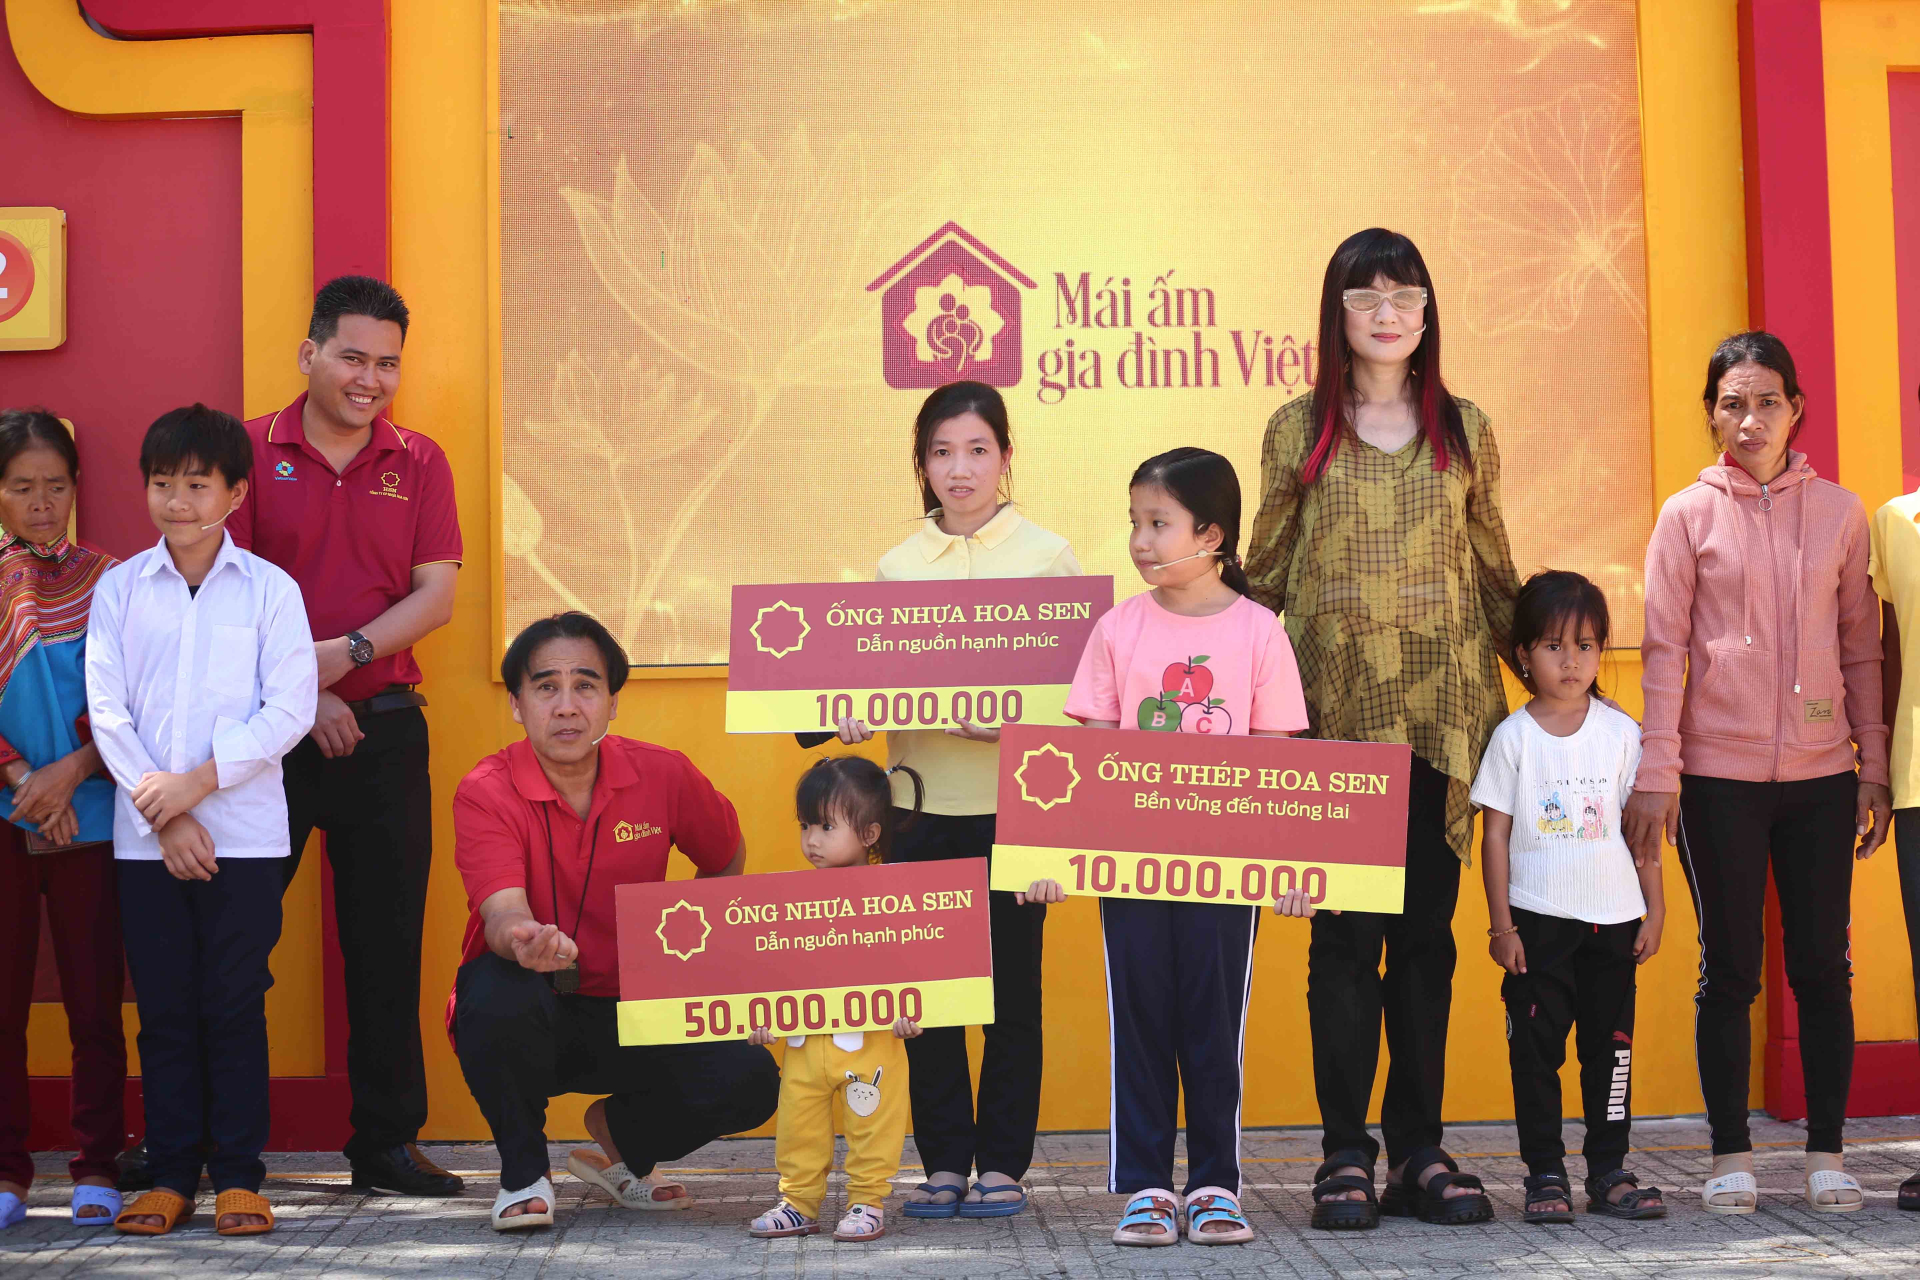 Diễn viên Hiền Mai và ca sĩ, nhạc sĩ Hamlet Trương góp sức mang về giải thưởng 105 triệu cho trẻ em mồ côi - ảnh 5